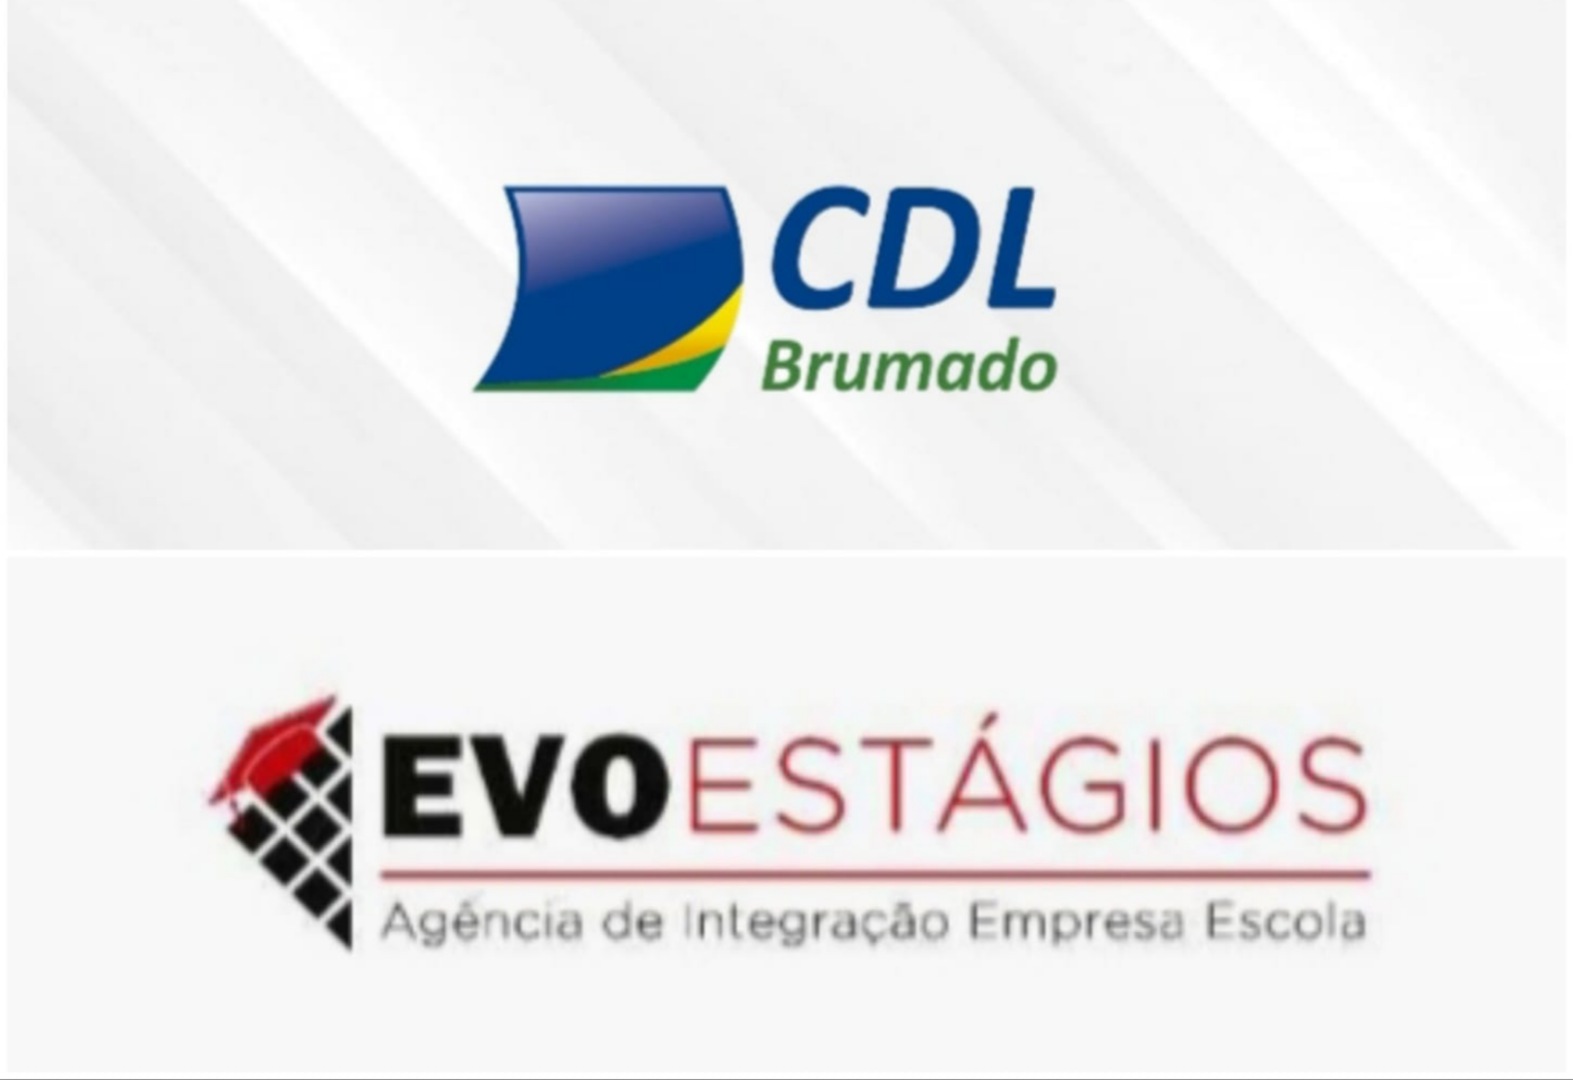 Uma das maiores parcerias da CDL já firmada em Brumado para geração de emprego é destaque a nível Brasil - EVOESTÁGIOS